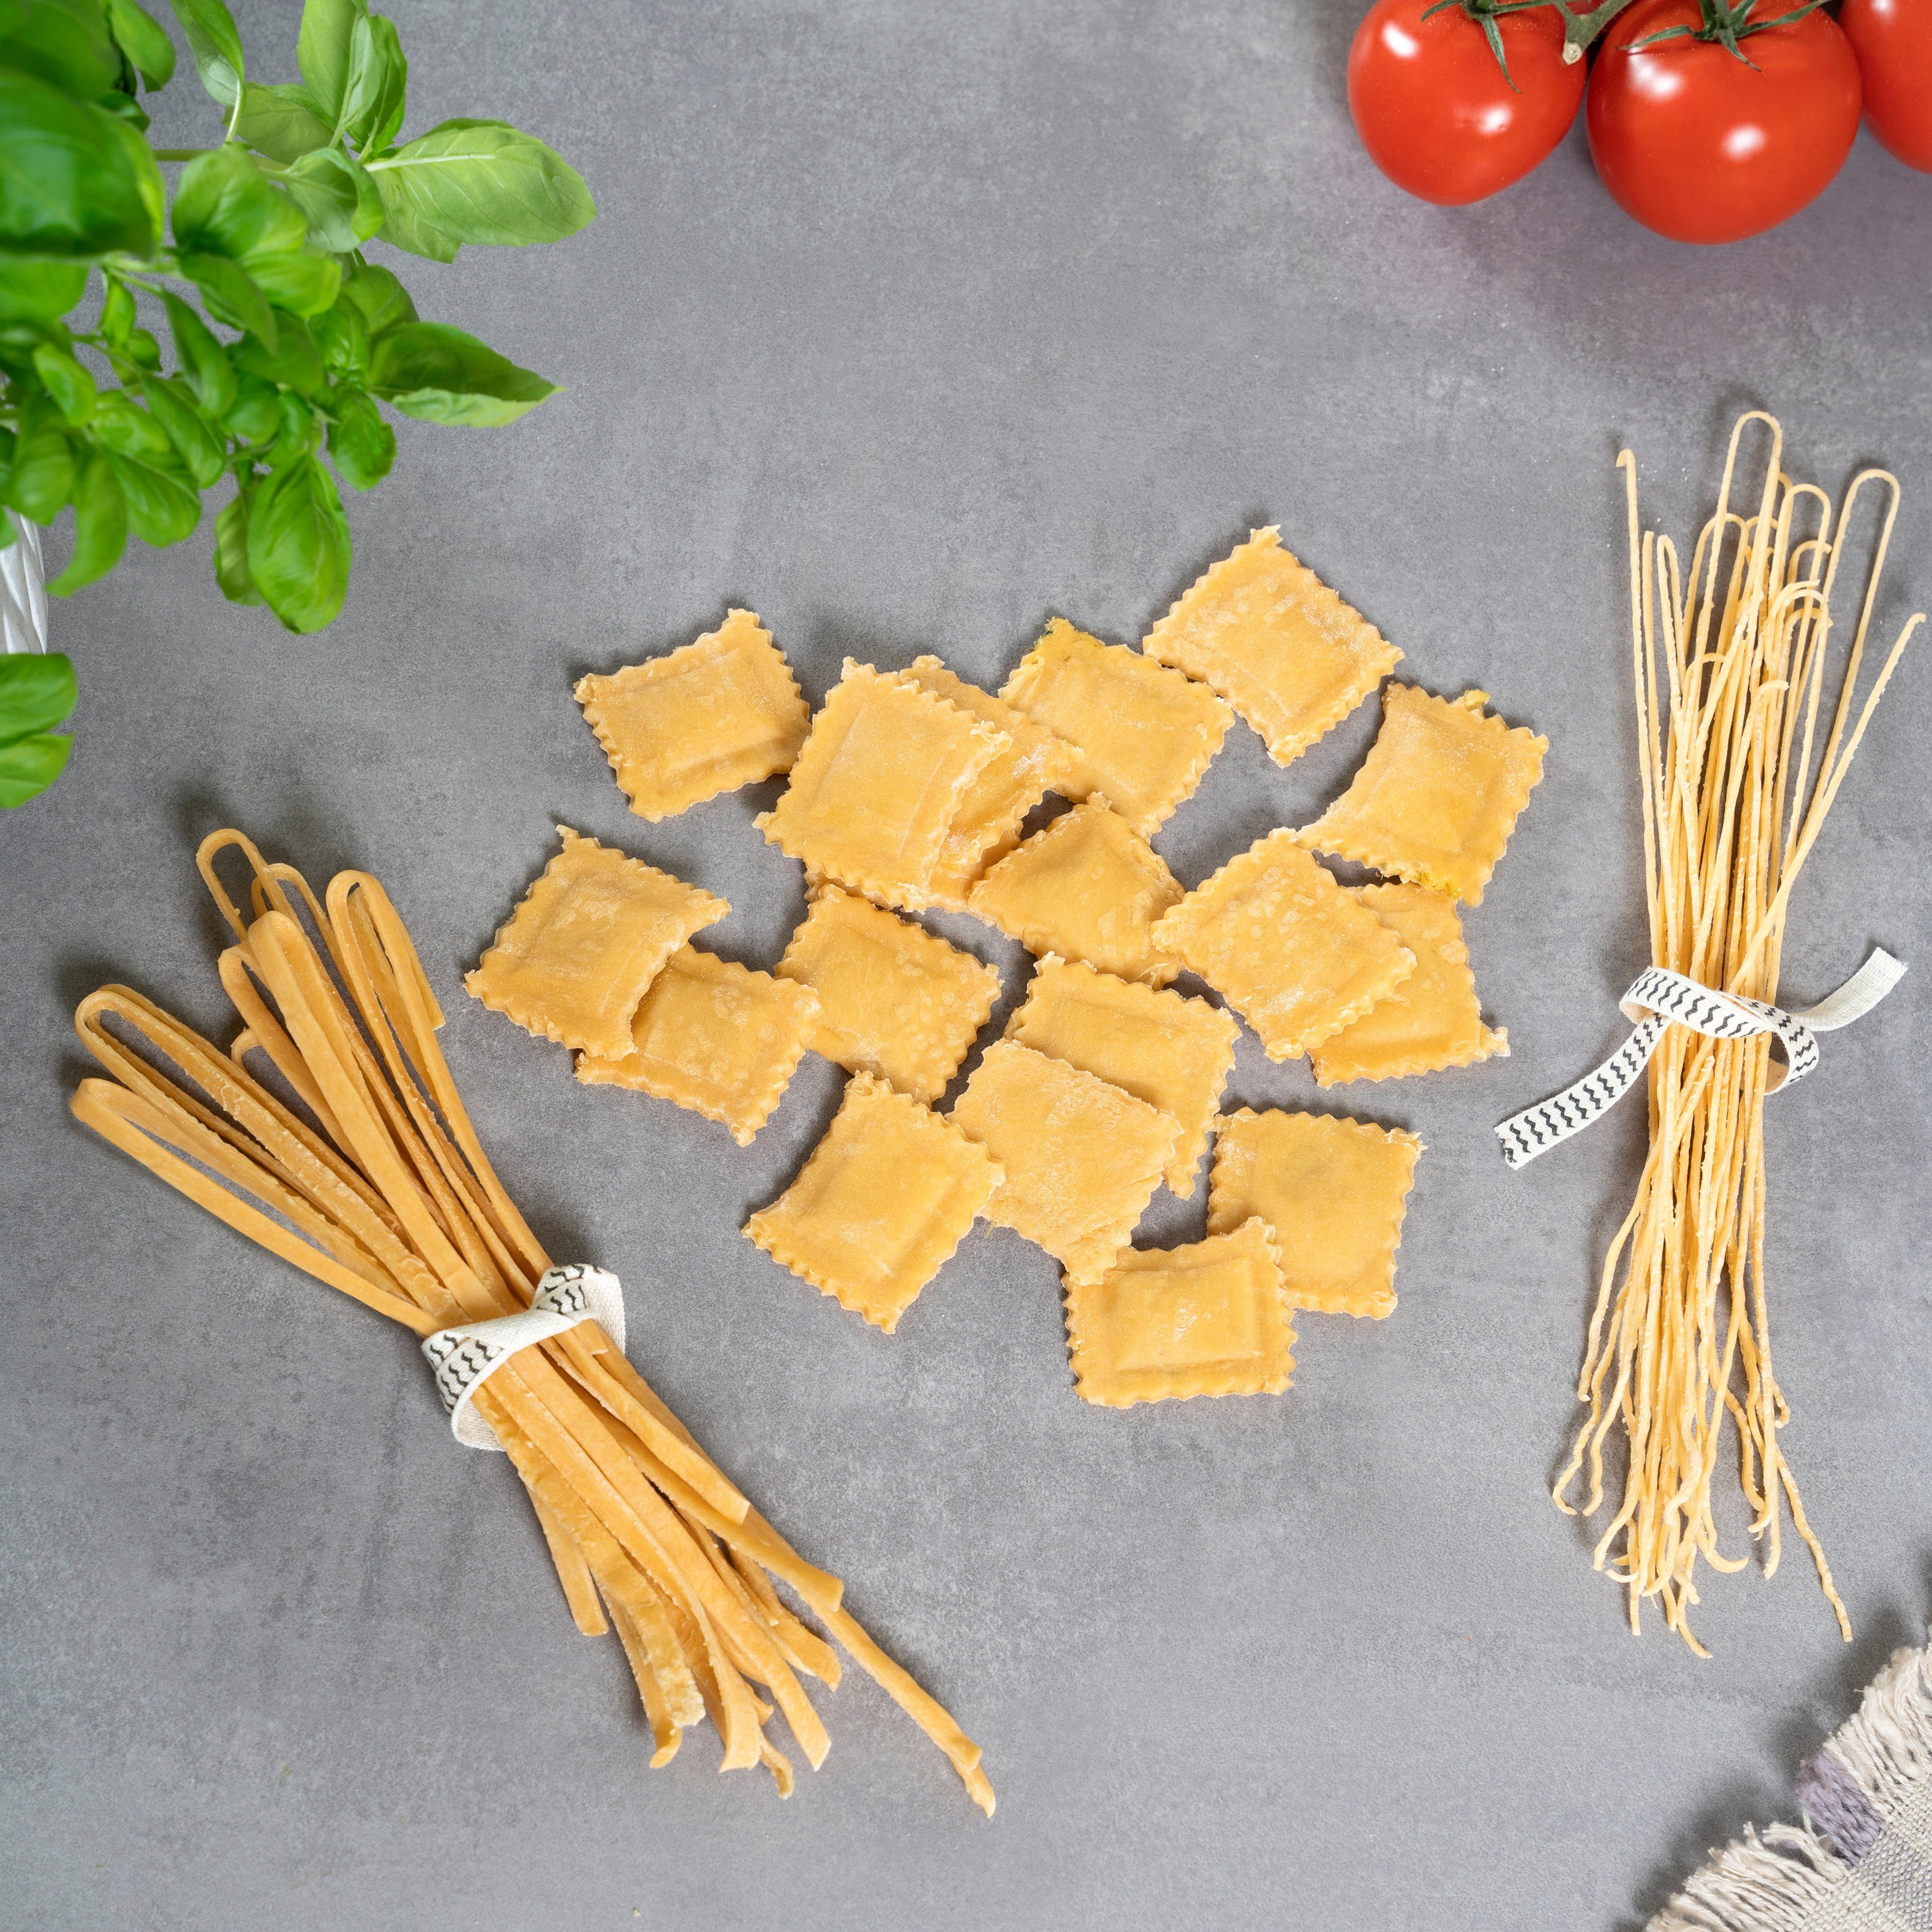 Nudelmaschine bremermann und Pasta, Nudelmaschine Lasagne Spaghetti, (7 bremermann für Ravioli